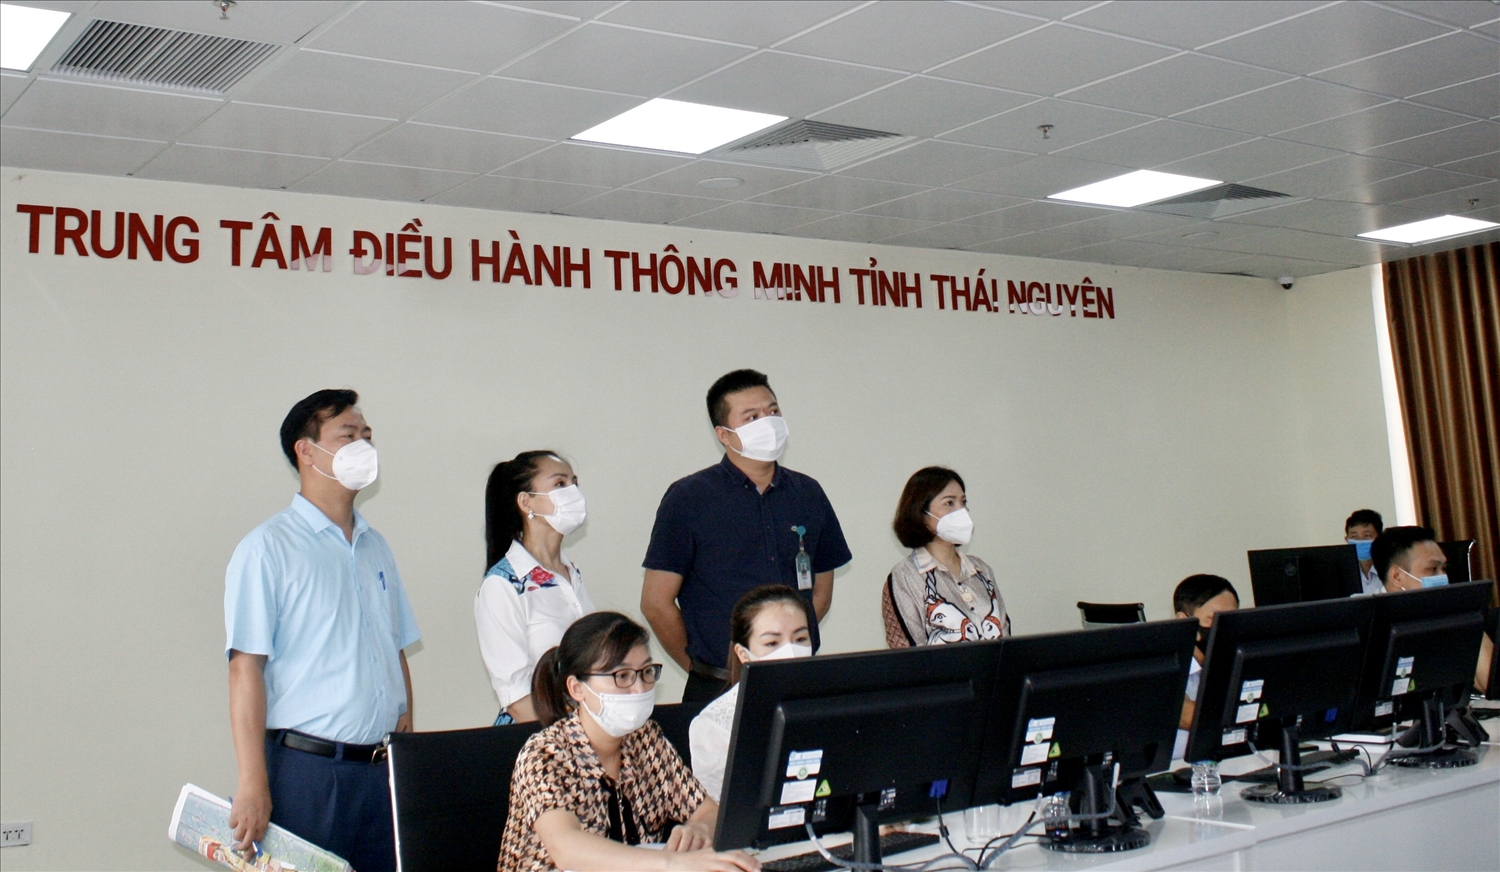 Đoàn công tác Báo Dân tộc và Phát triển tham quan trung tâm điều hành thông tin của tỉnh Thái Nguyên